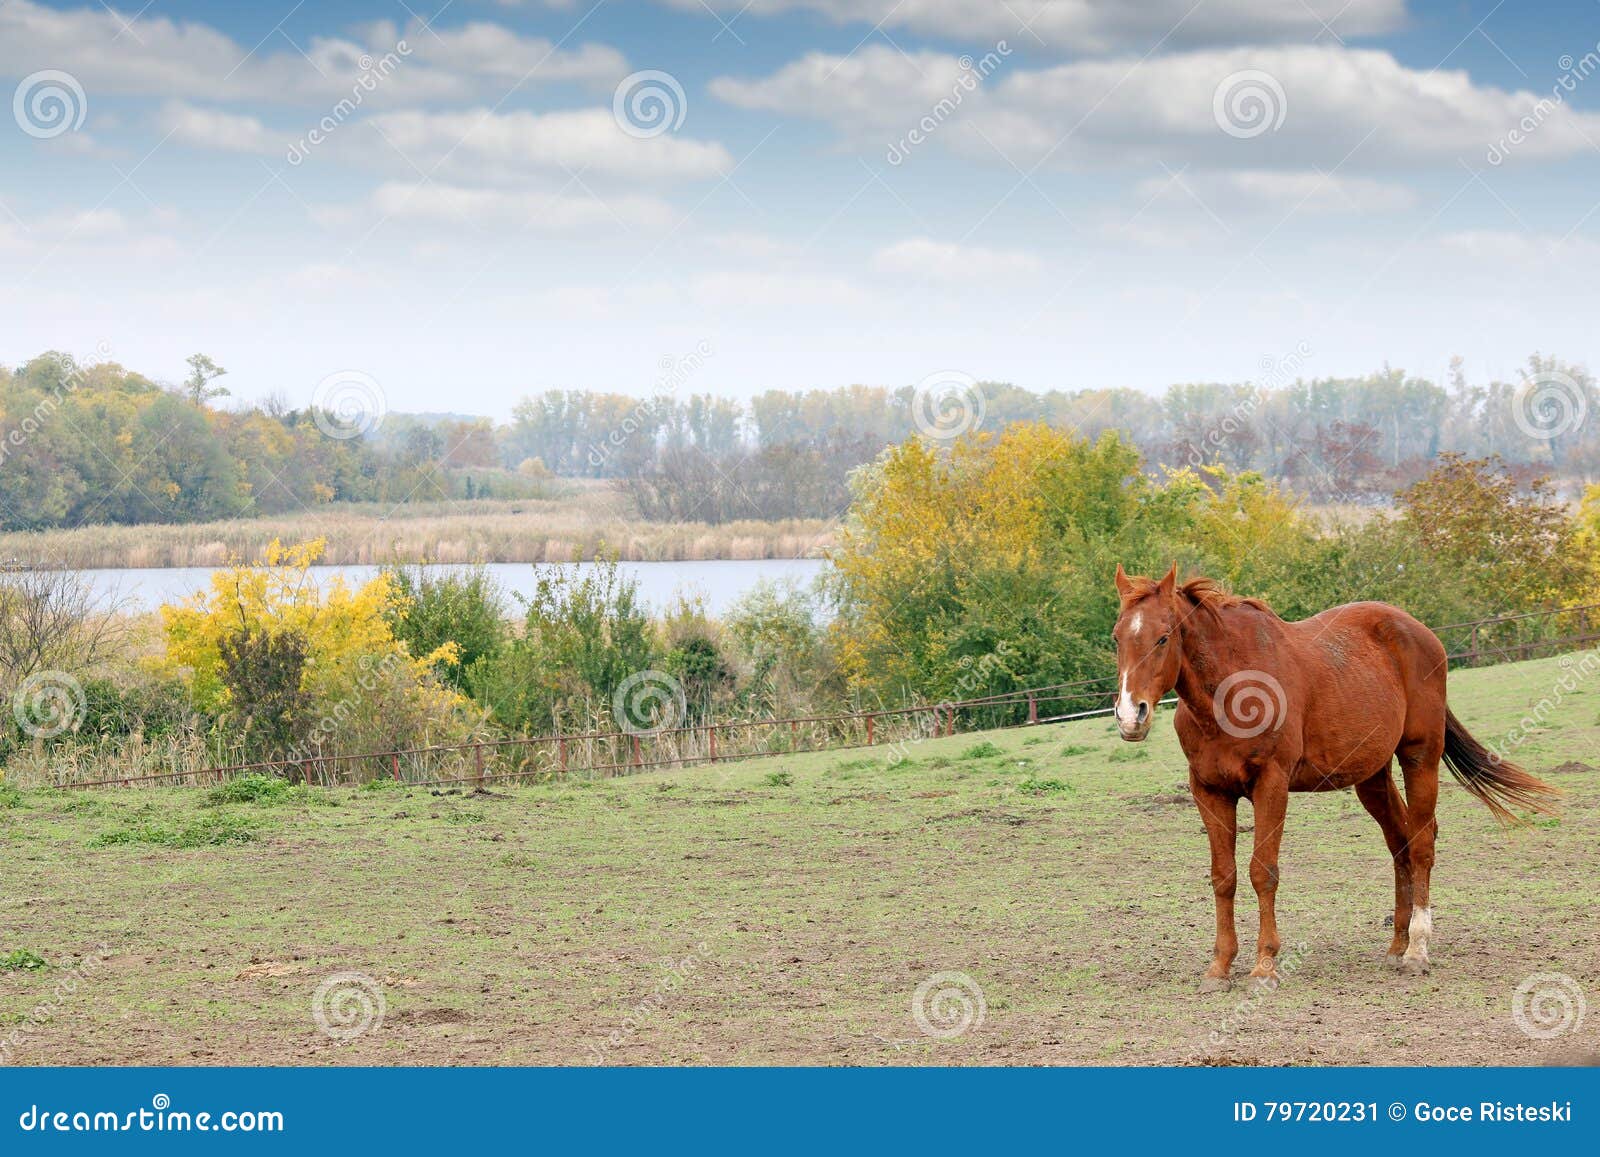 horse on pasture autumn season